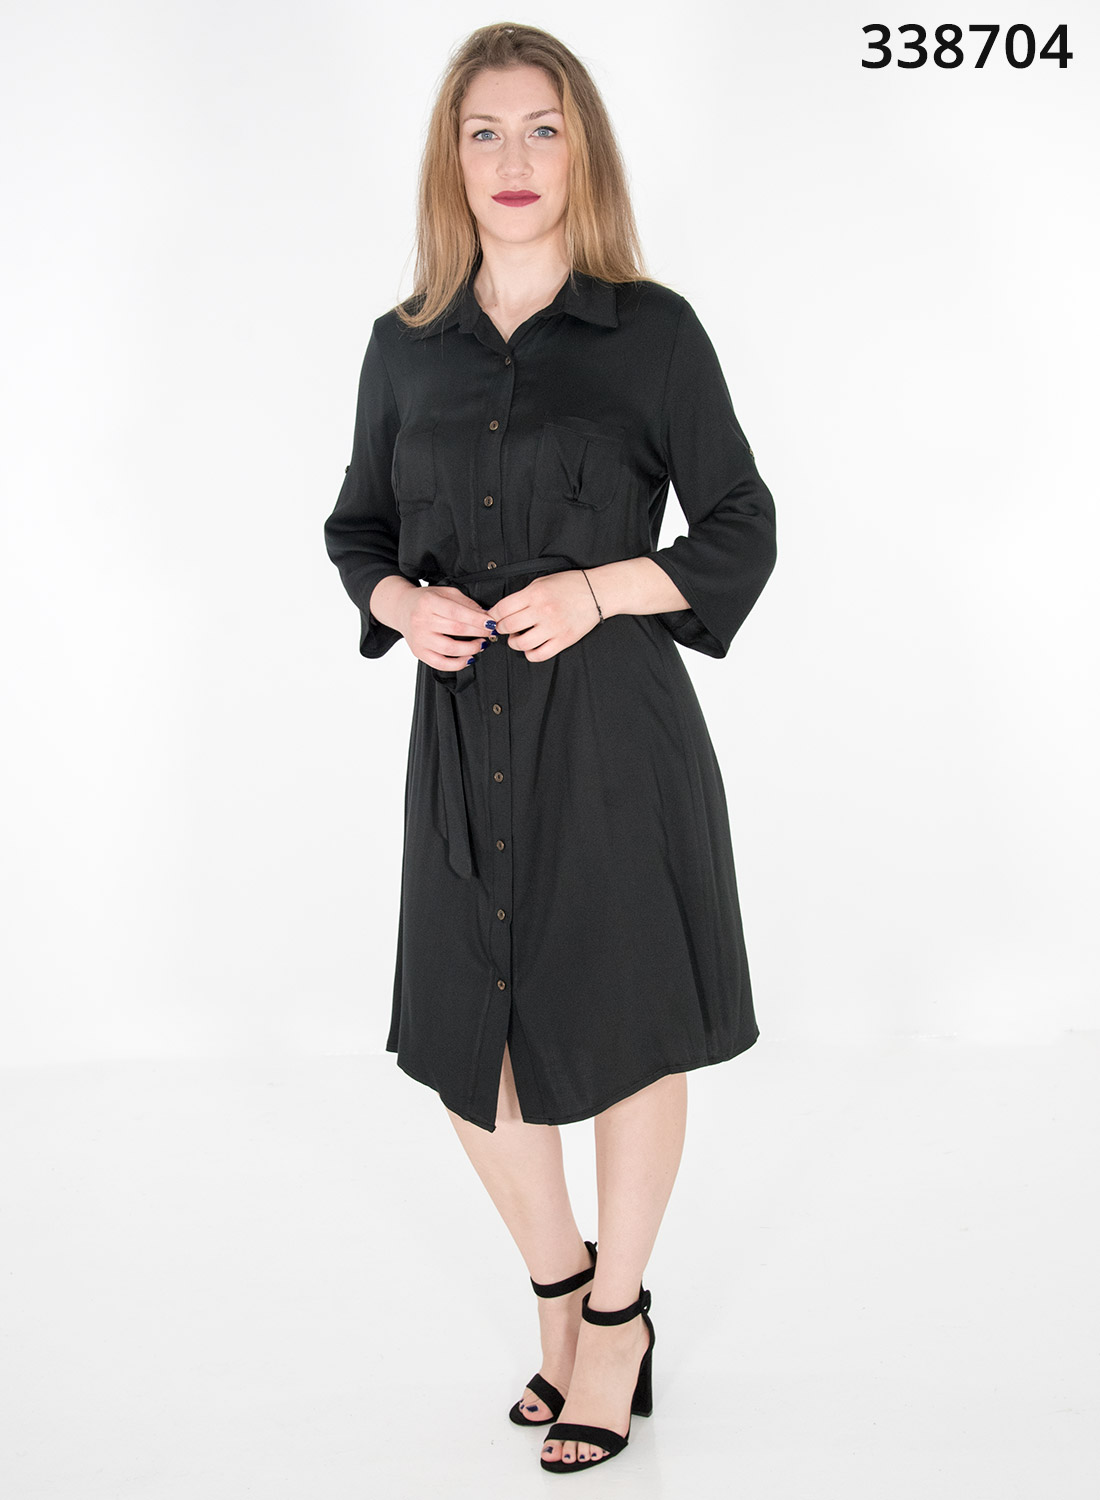 Μαύρο midi φόρεμα με κουμπιά και ζώνη στη μέση